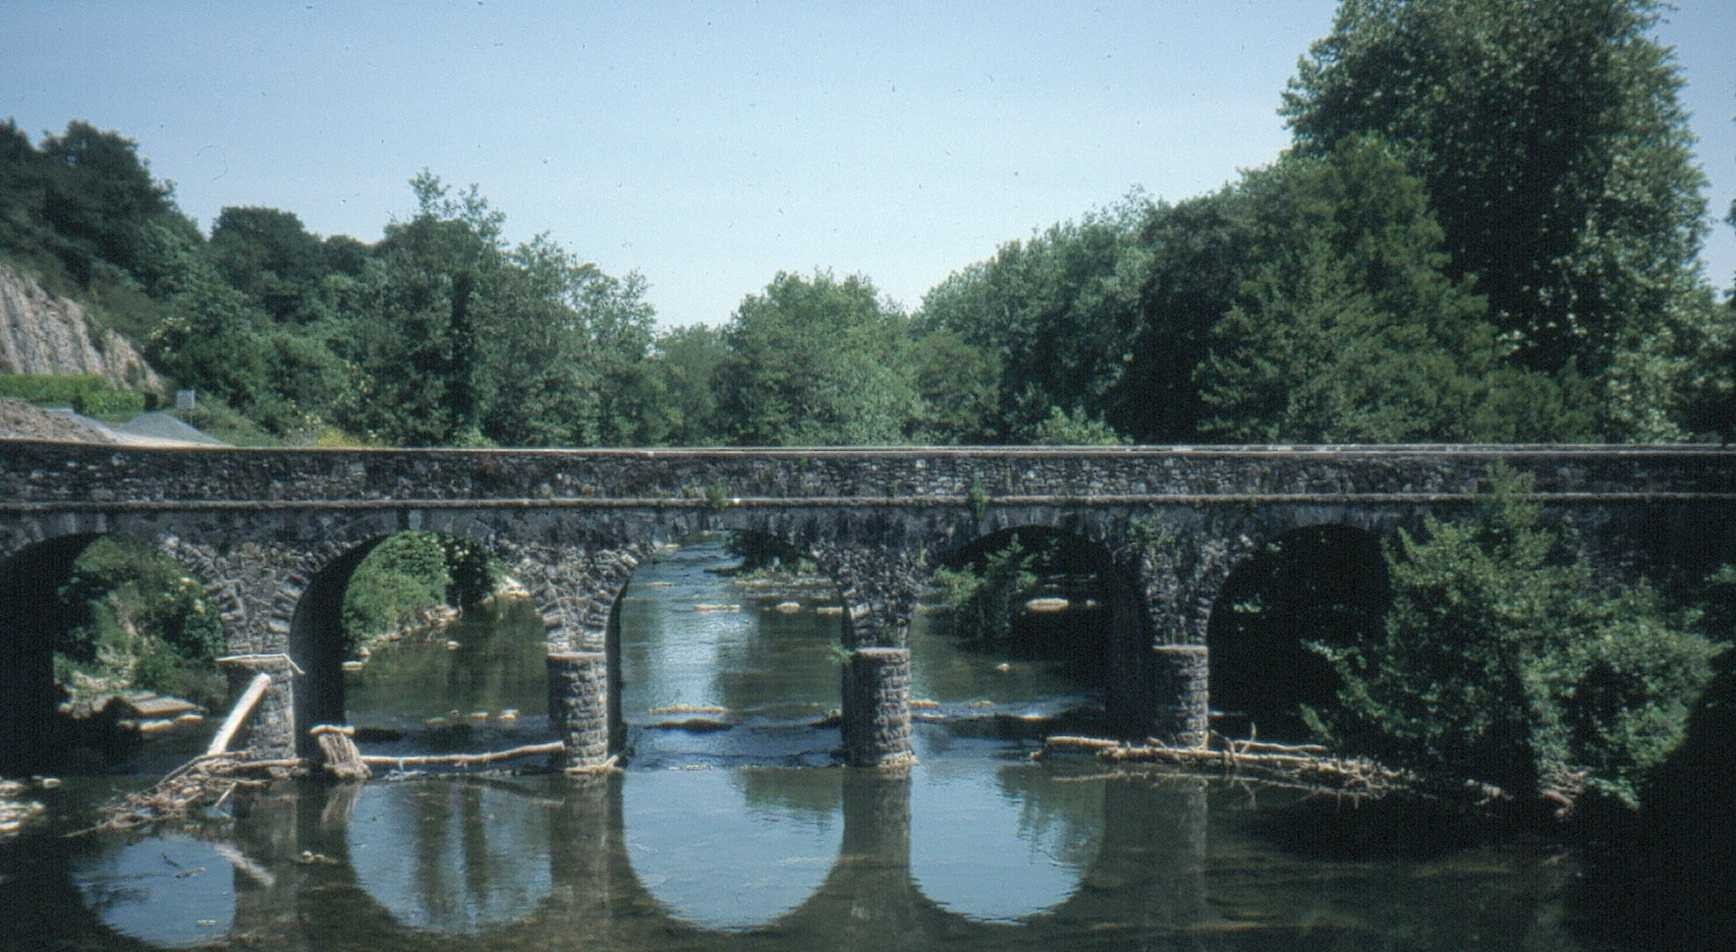   Pont moyenâgeux entre Saint-Palais et Uhart-Mixe. 